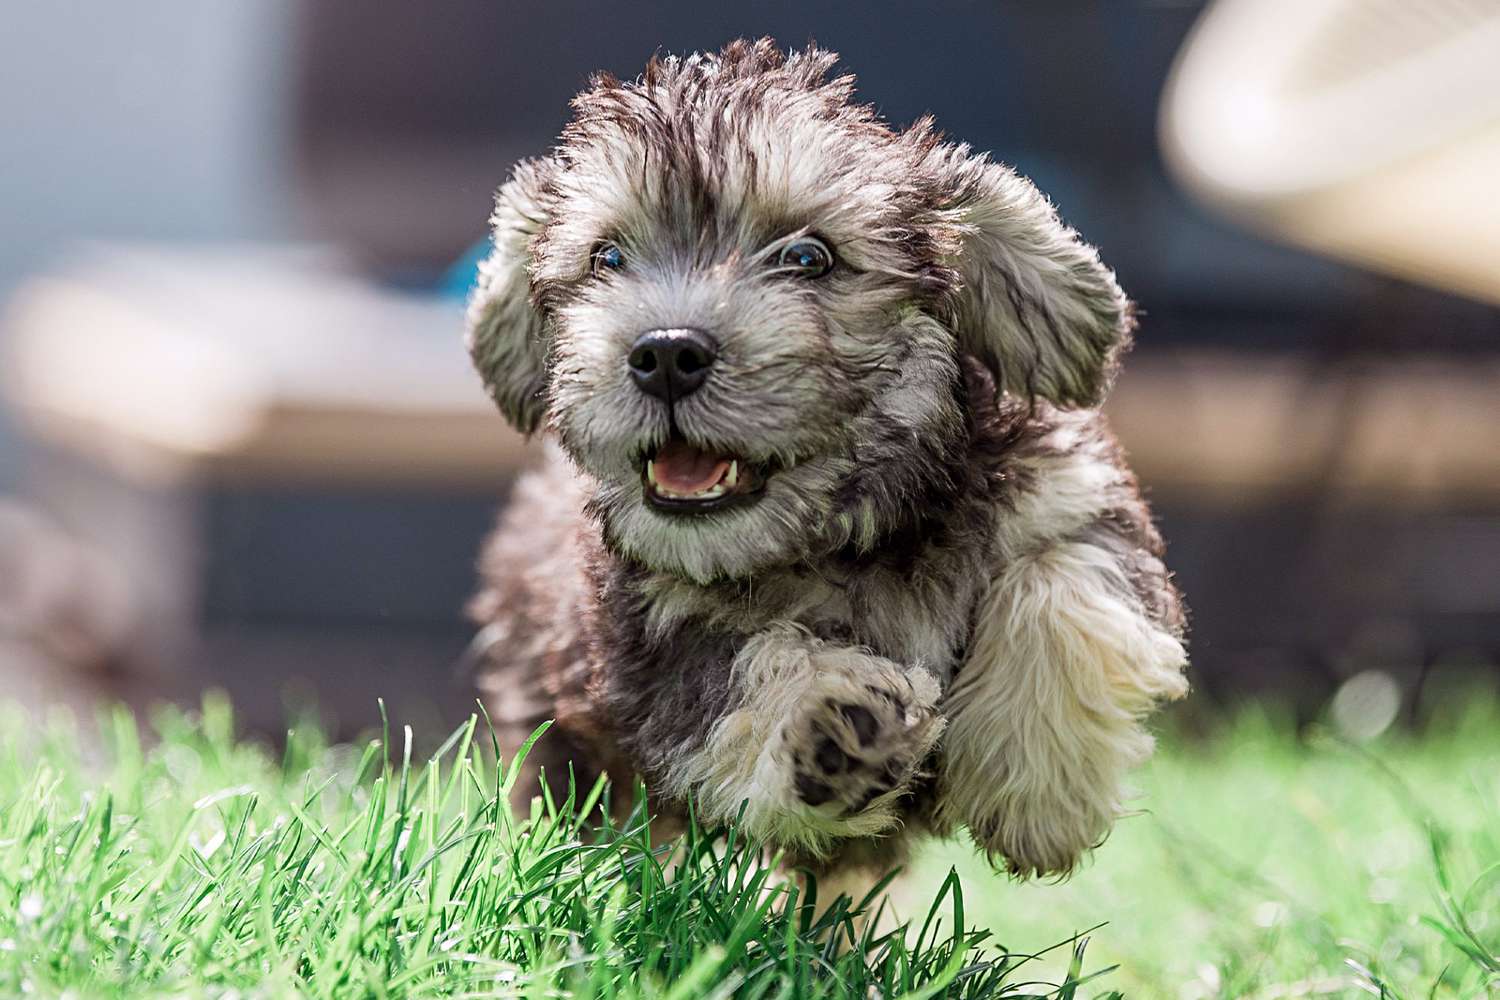 dandie dinmont terrier puppy running through grass